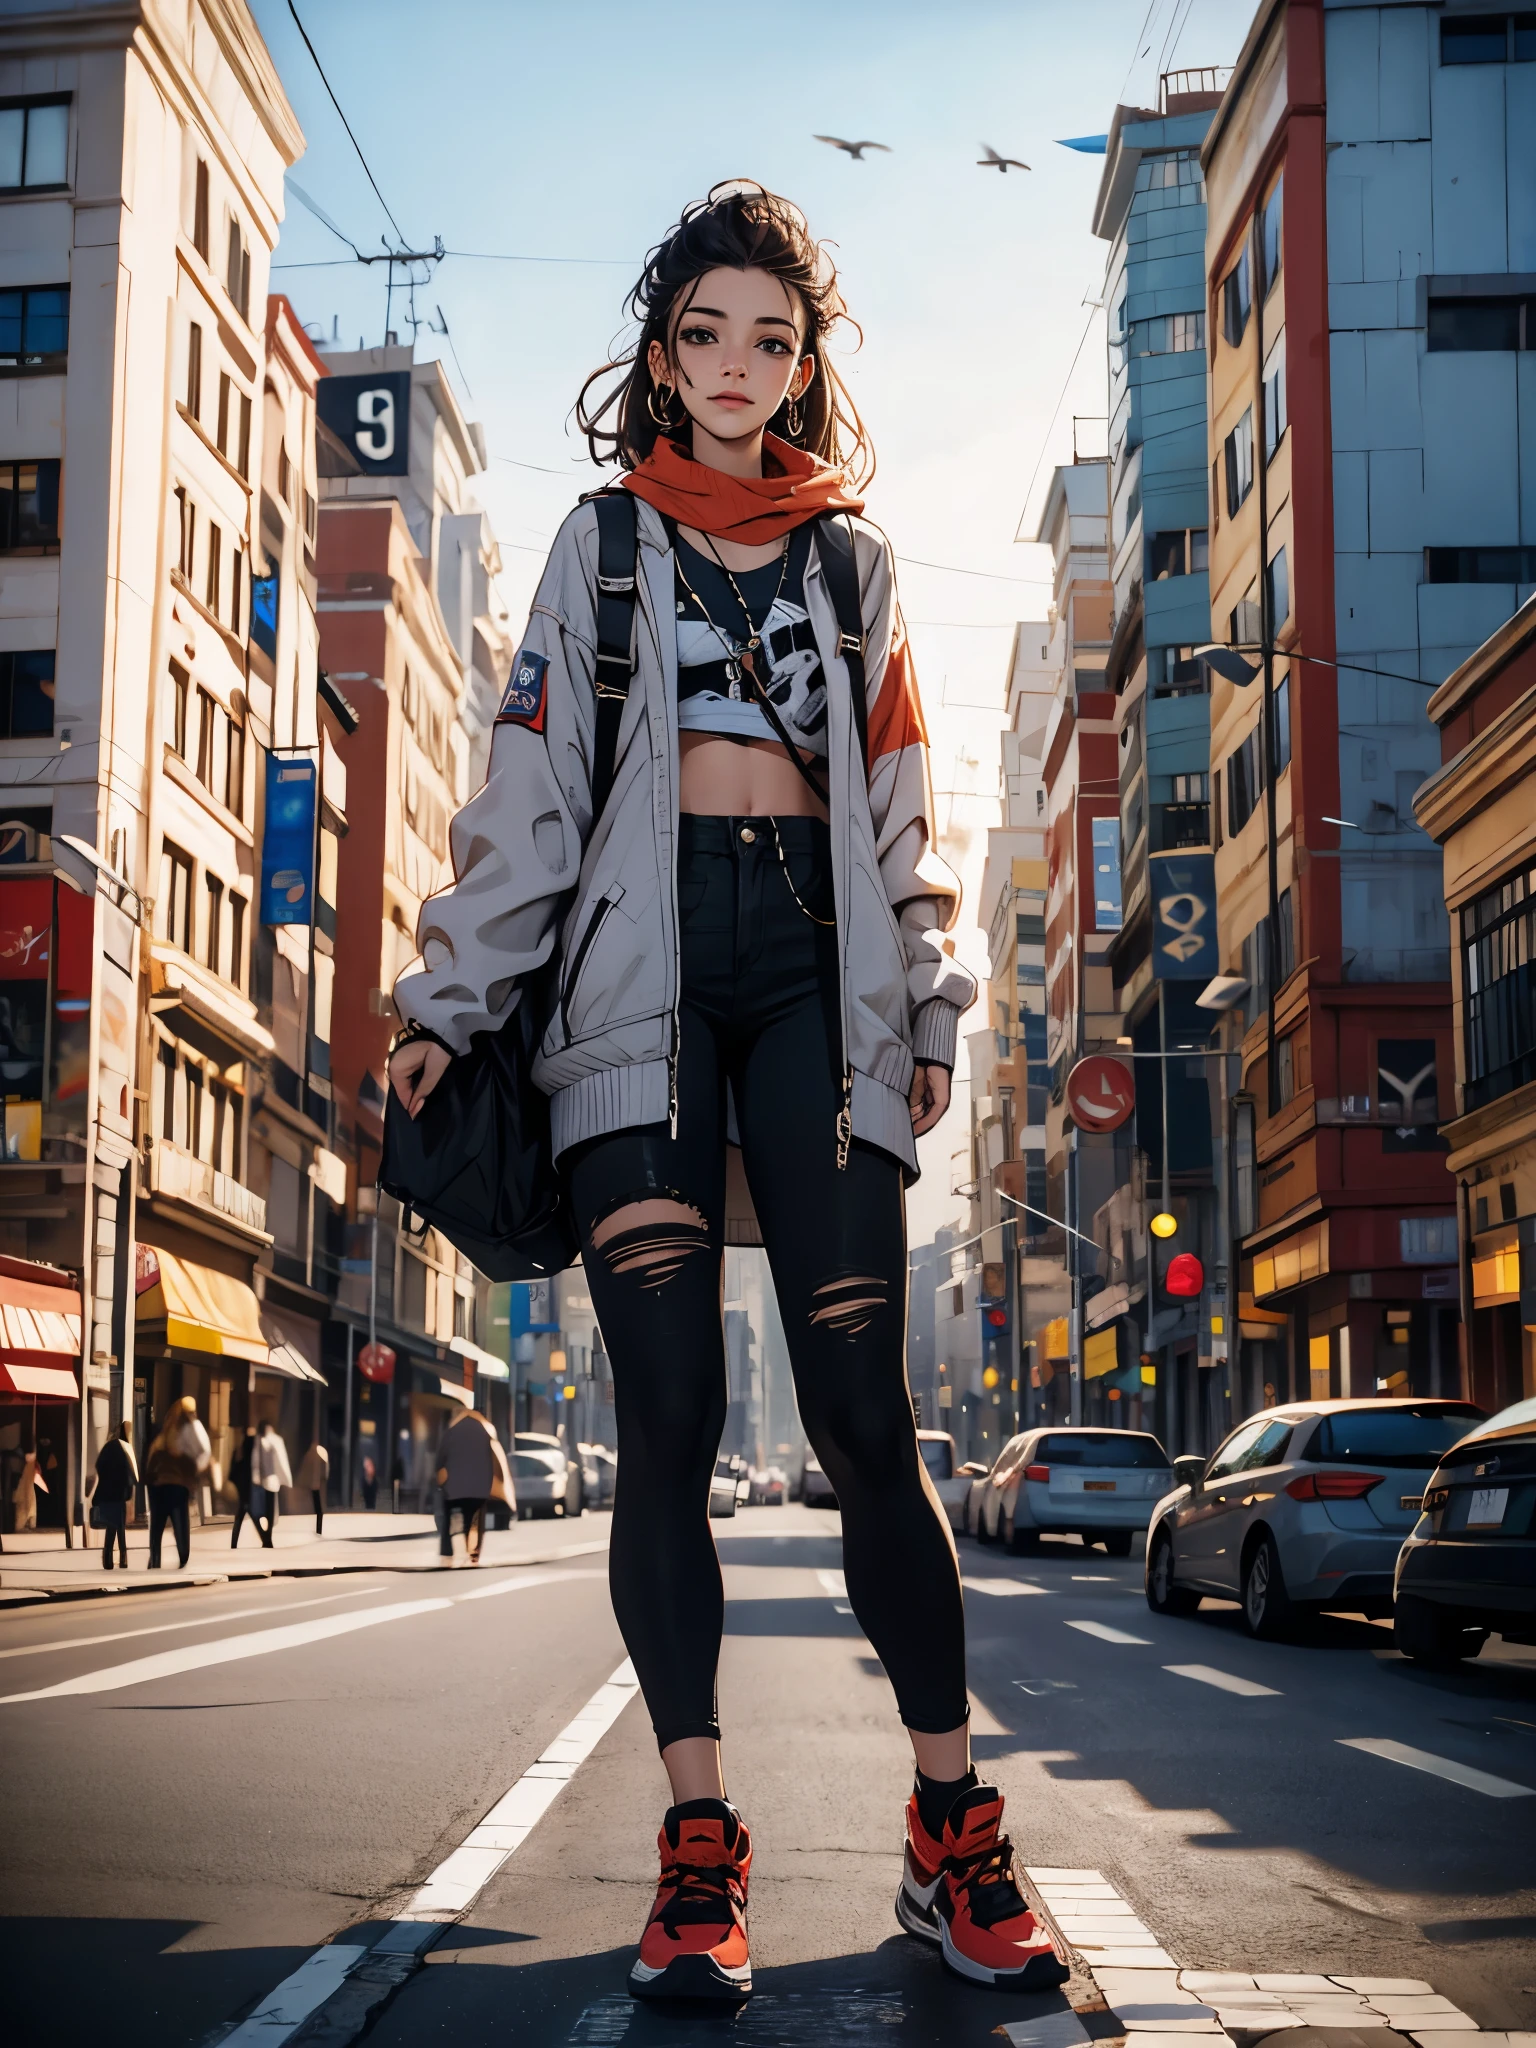 Una mujer joven parada en la calle., difuminar el fondo, hermoso, Fotorrealista